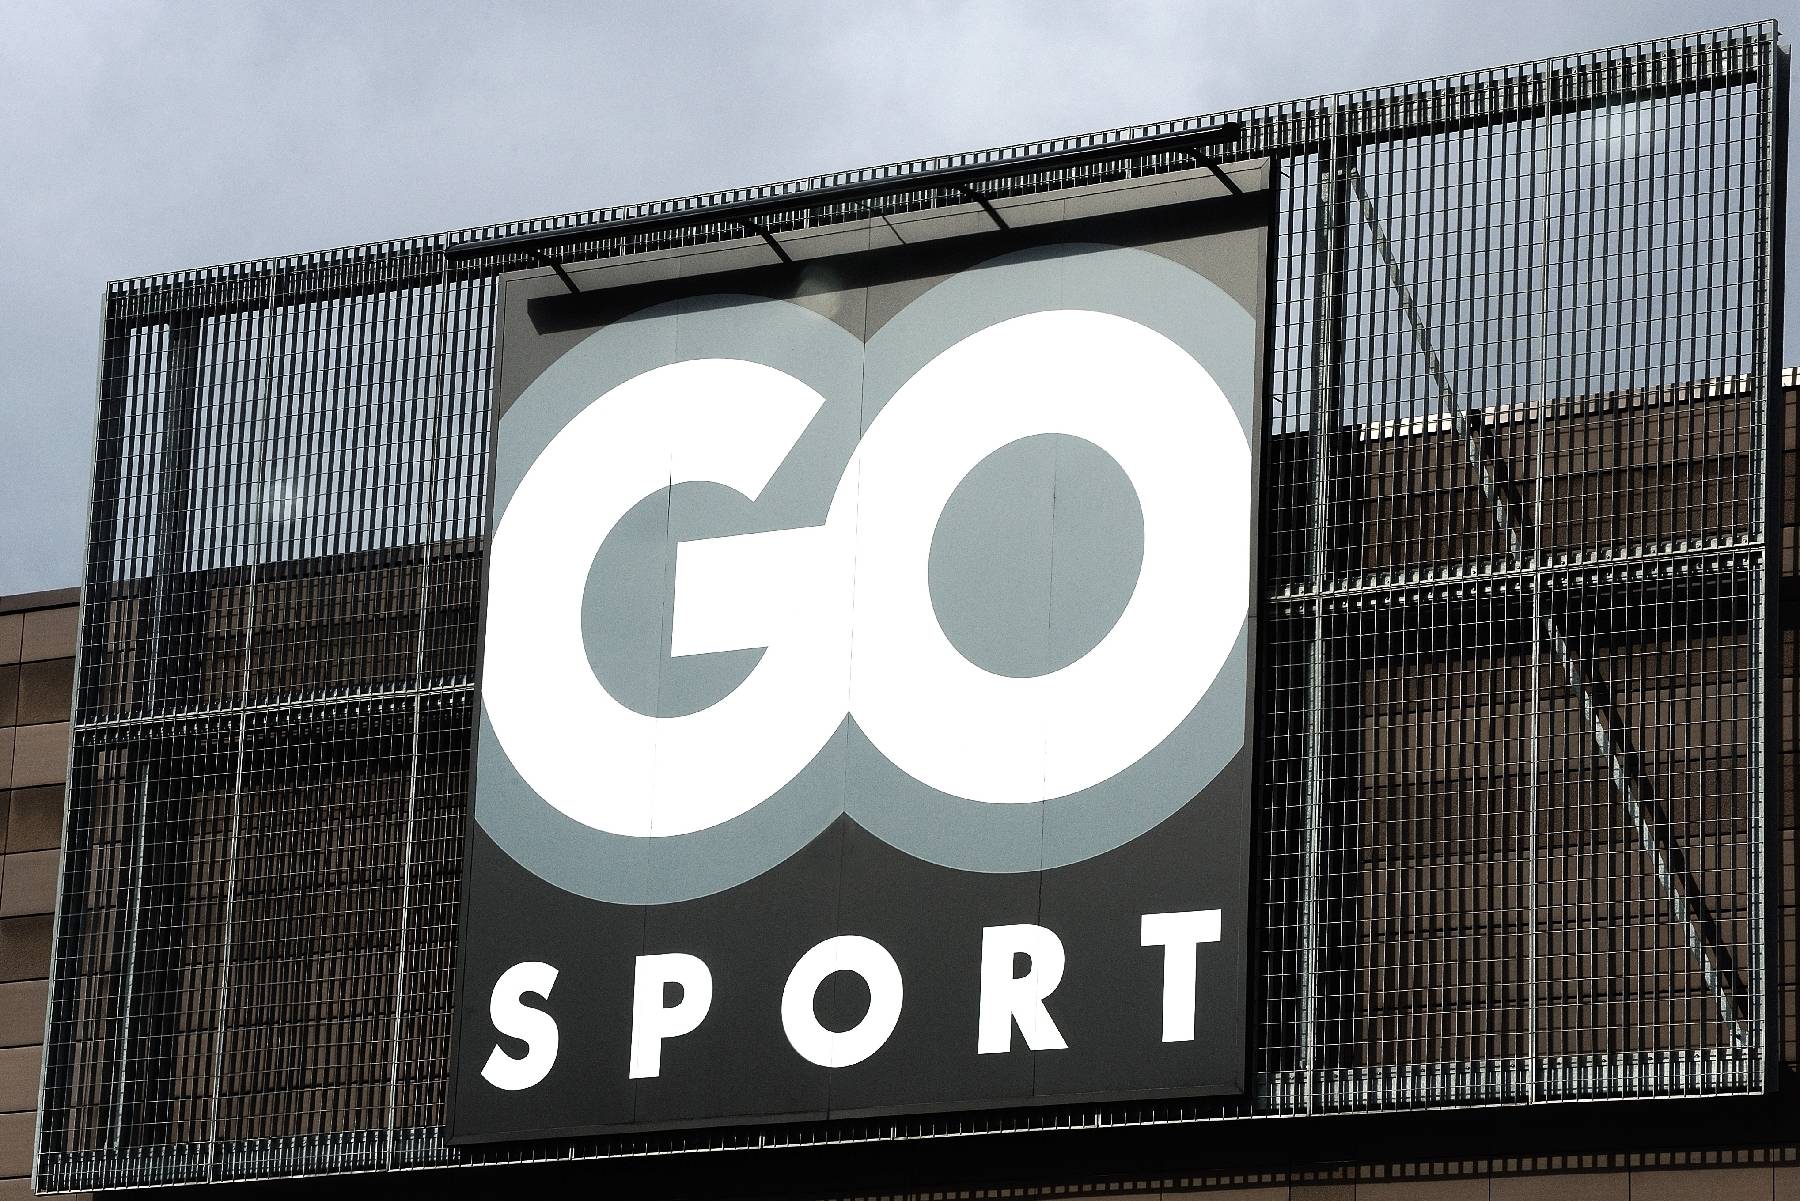 Le distributeur d'articles sportifs Groupe Go Sport placé en redressement judiciaire